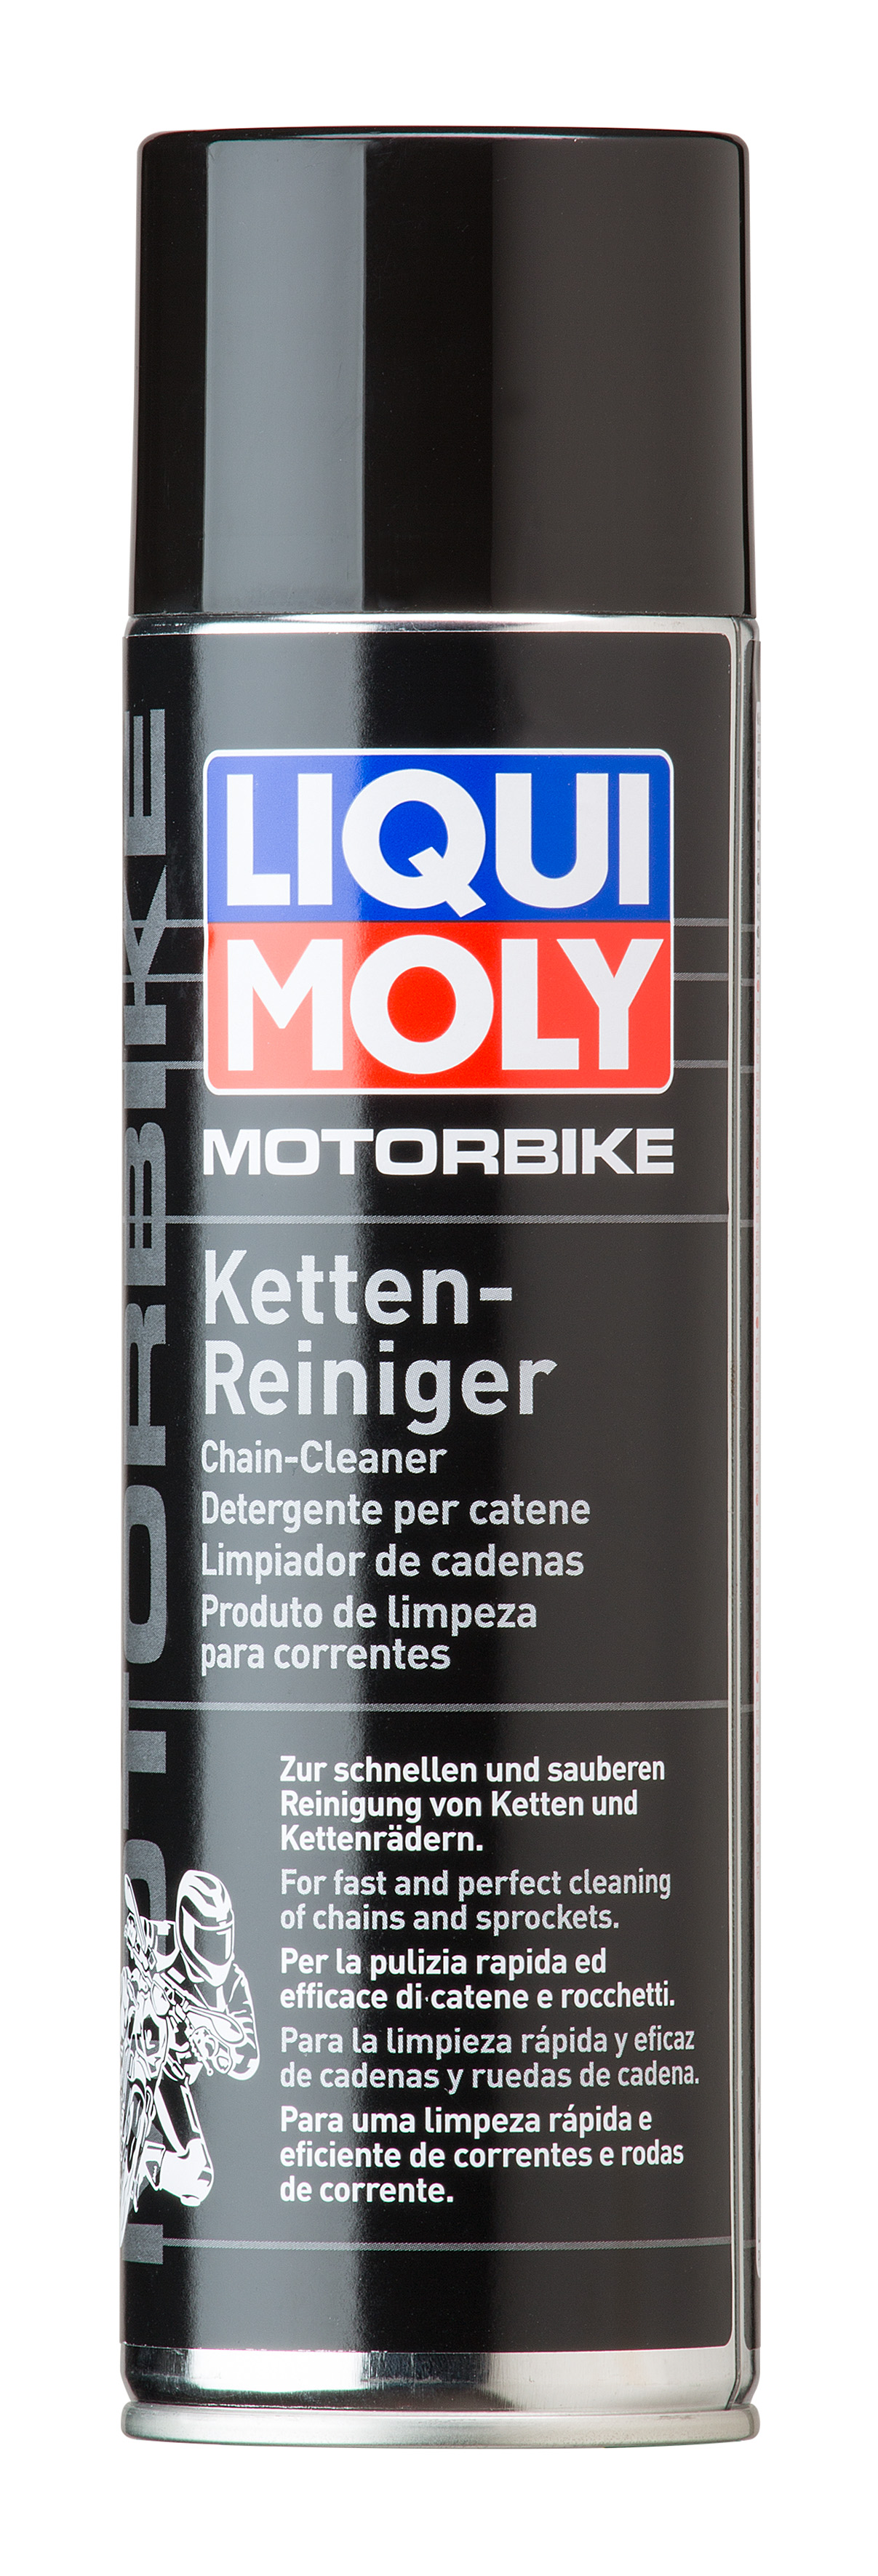 Очиститель приводной цепи и тормозов мотоцикла Motorbike Ketten- und Bremsenreiniger, 500мл - Liqui Moly 1602